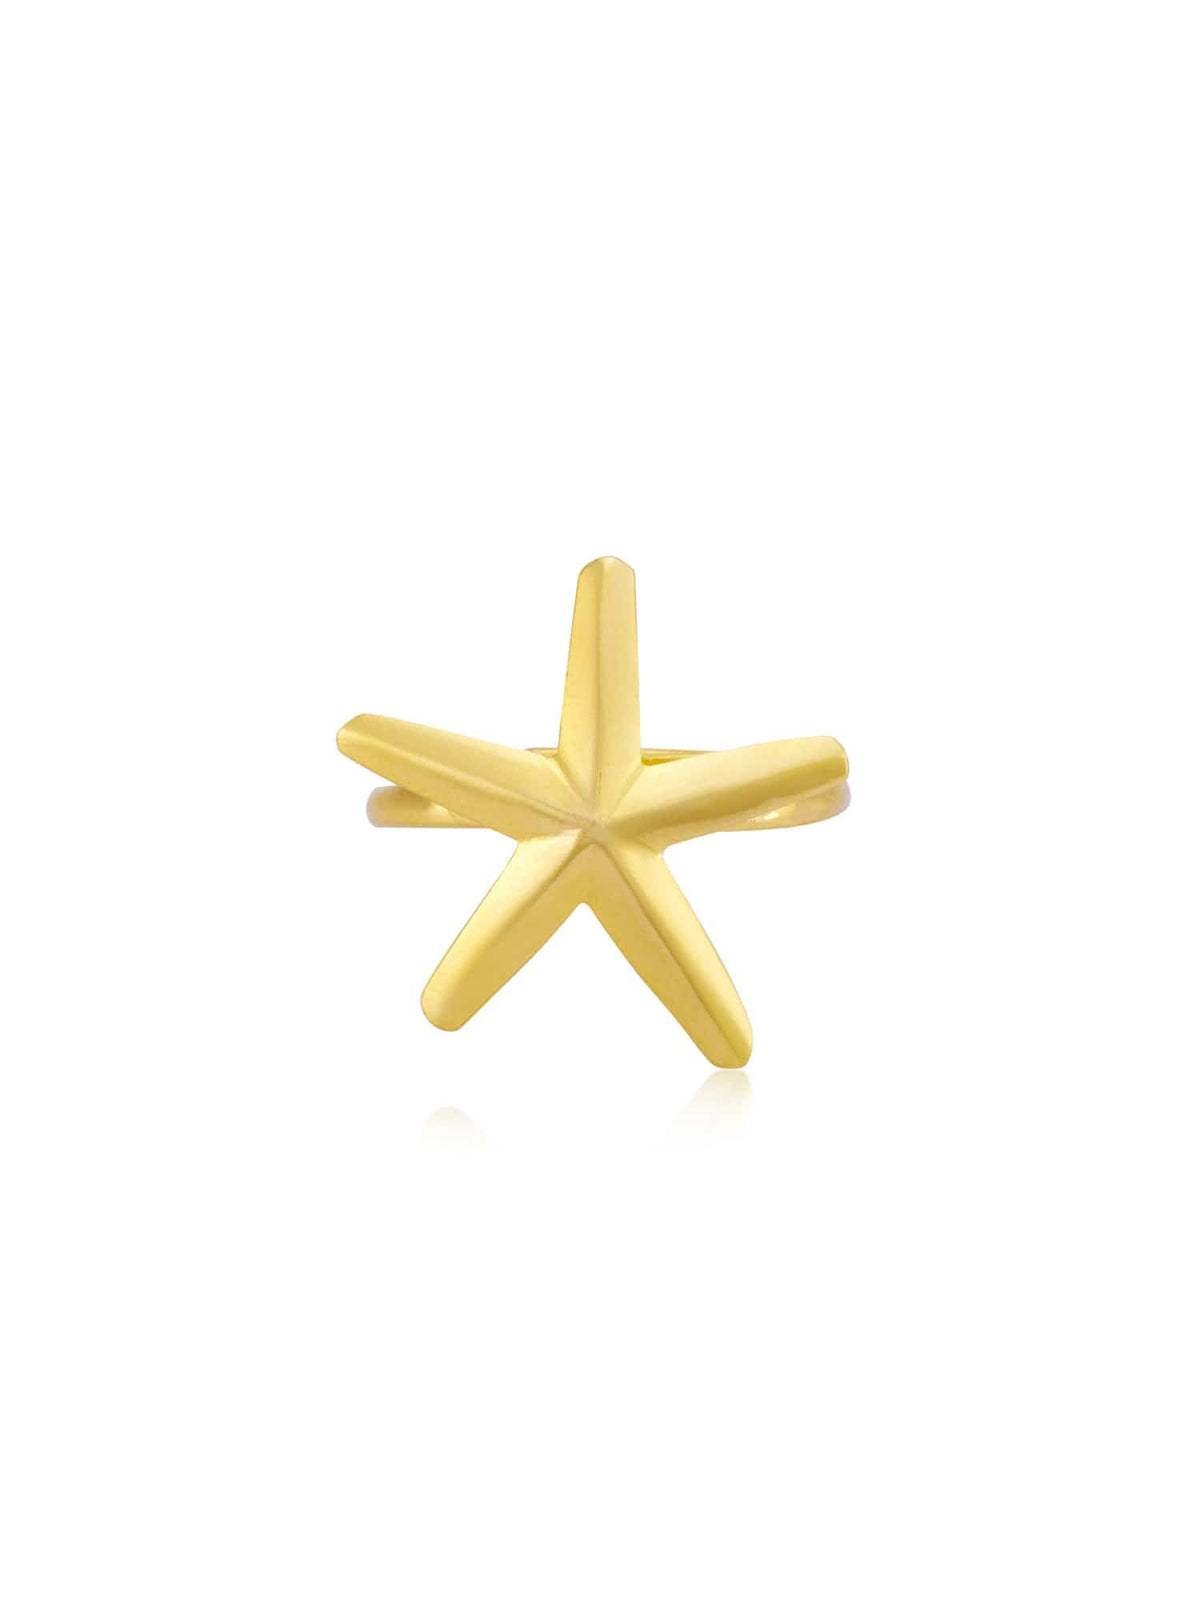 Oceana starfish ring